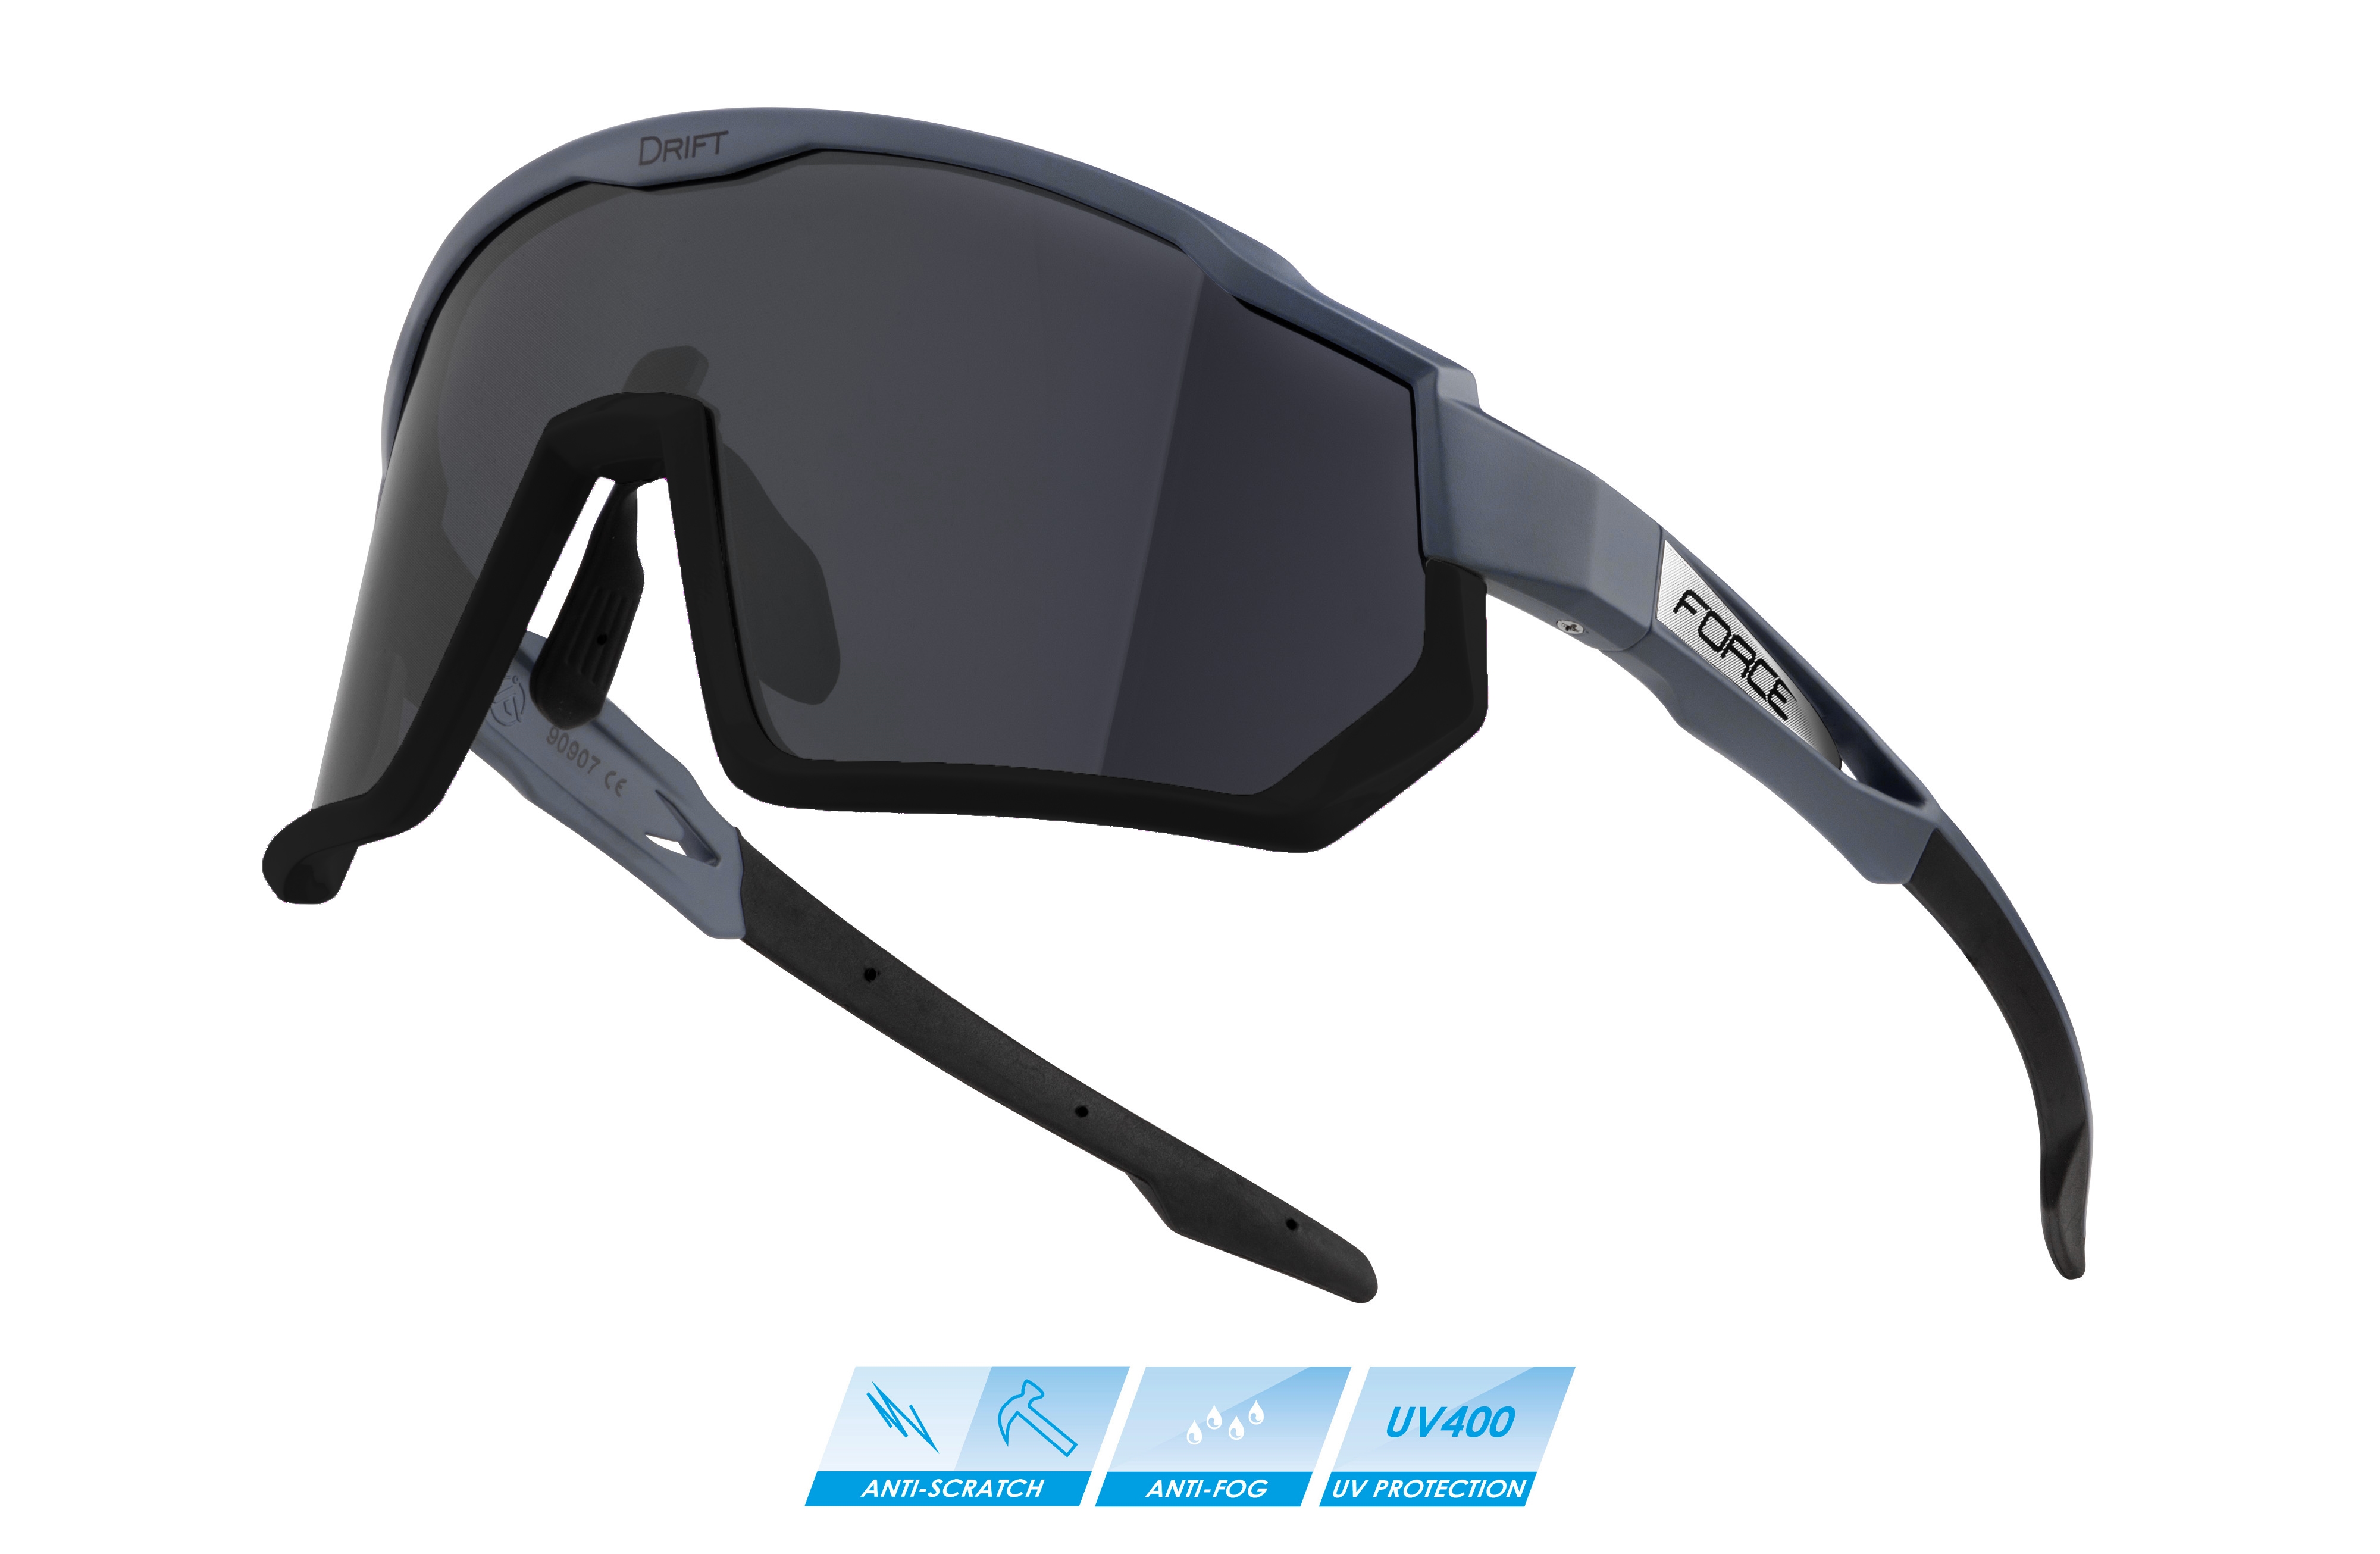 FORCE brýle F DRIFT šedo-černé,černé kontrast.sklo Barva: Černá, určení: cyklistické, skla: kontrastní